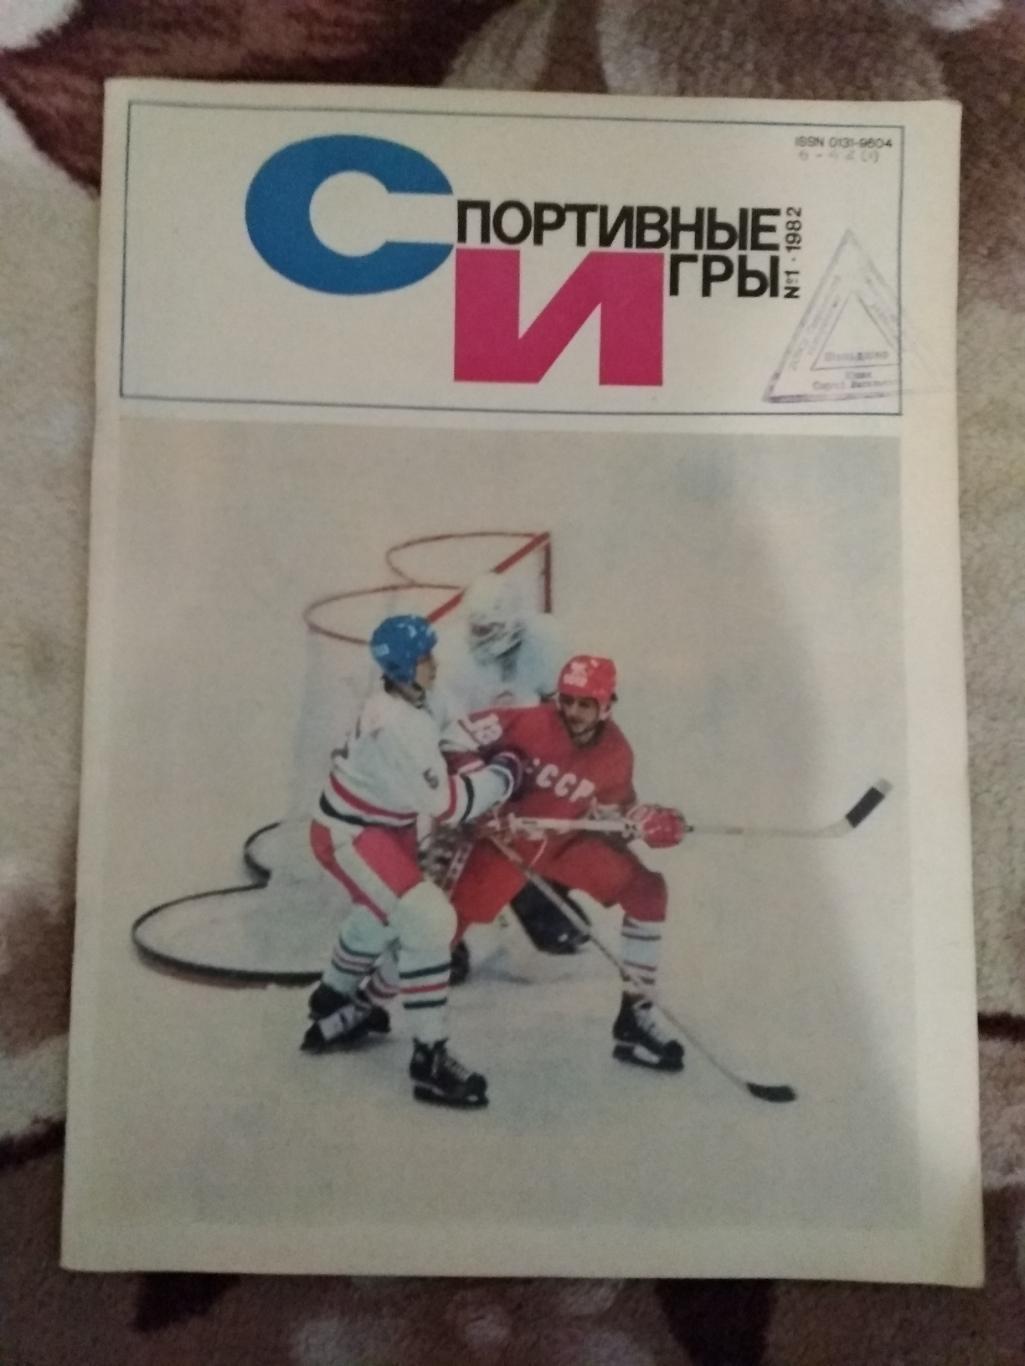 Журнал.Спортивные игры № 1 1982 г.